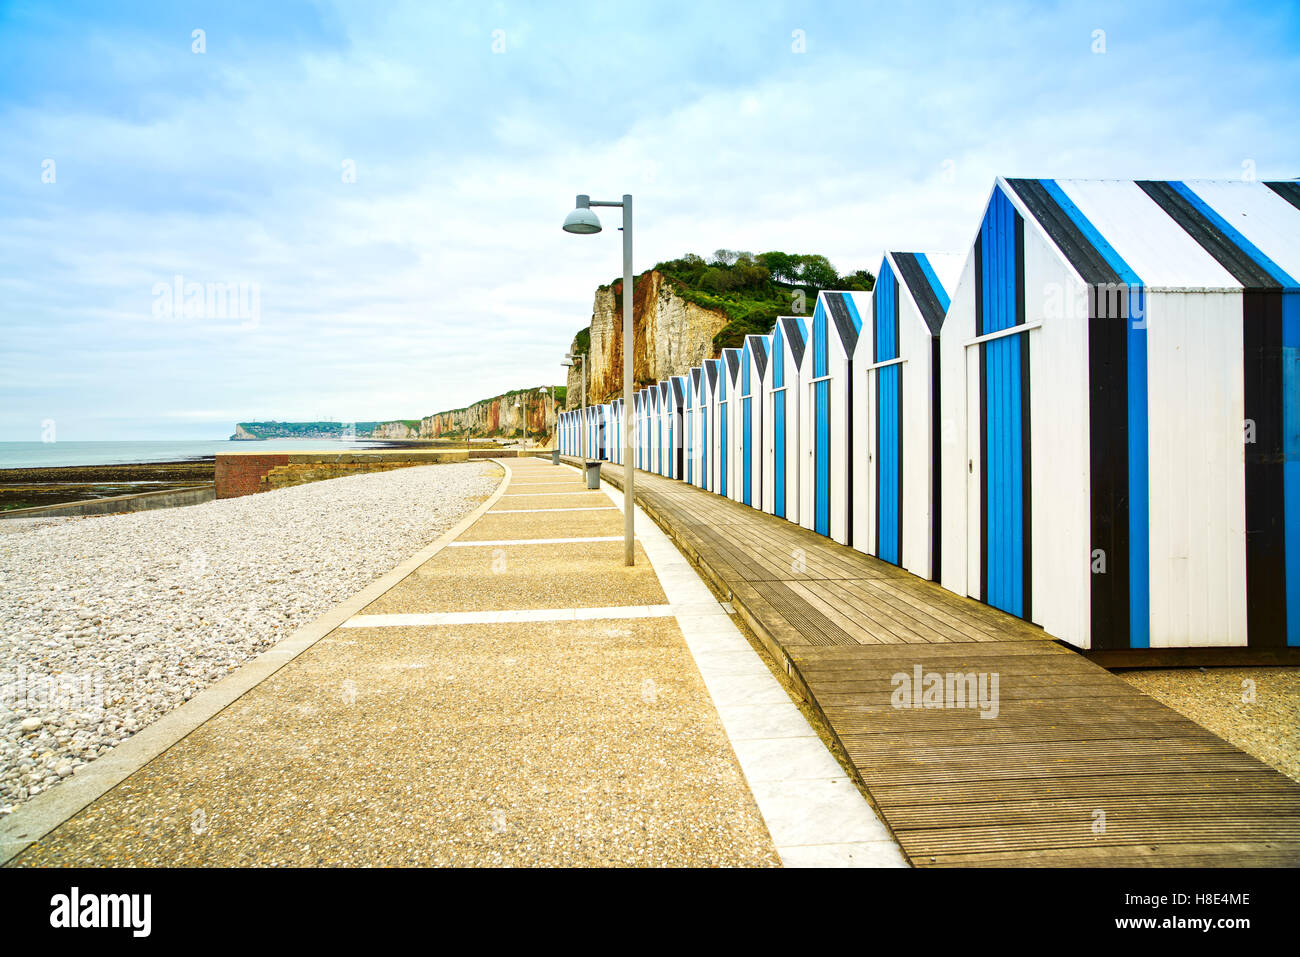 Yport et Fécamp, Normandie. Cabines de plage ou des cabines et les falaises de l'océan à marée basse. La France, l'Europe. Banque D'Images